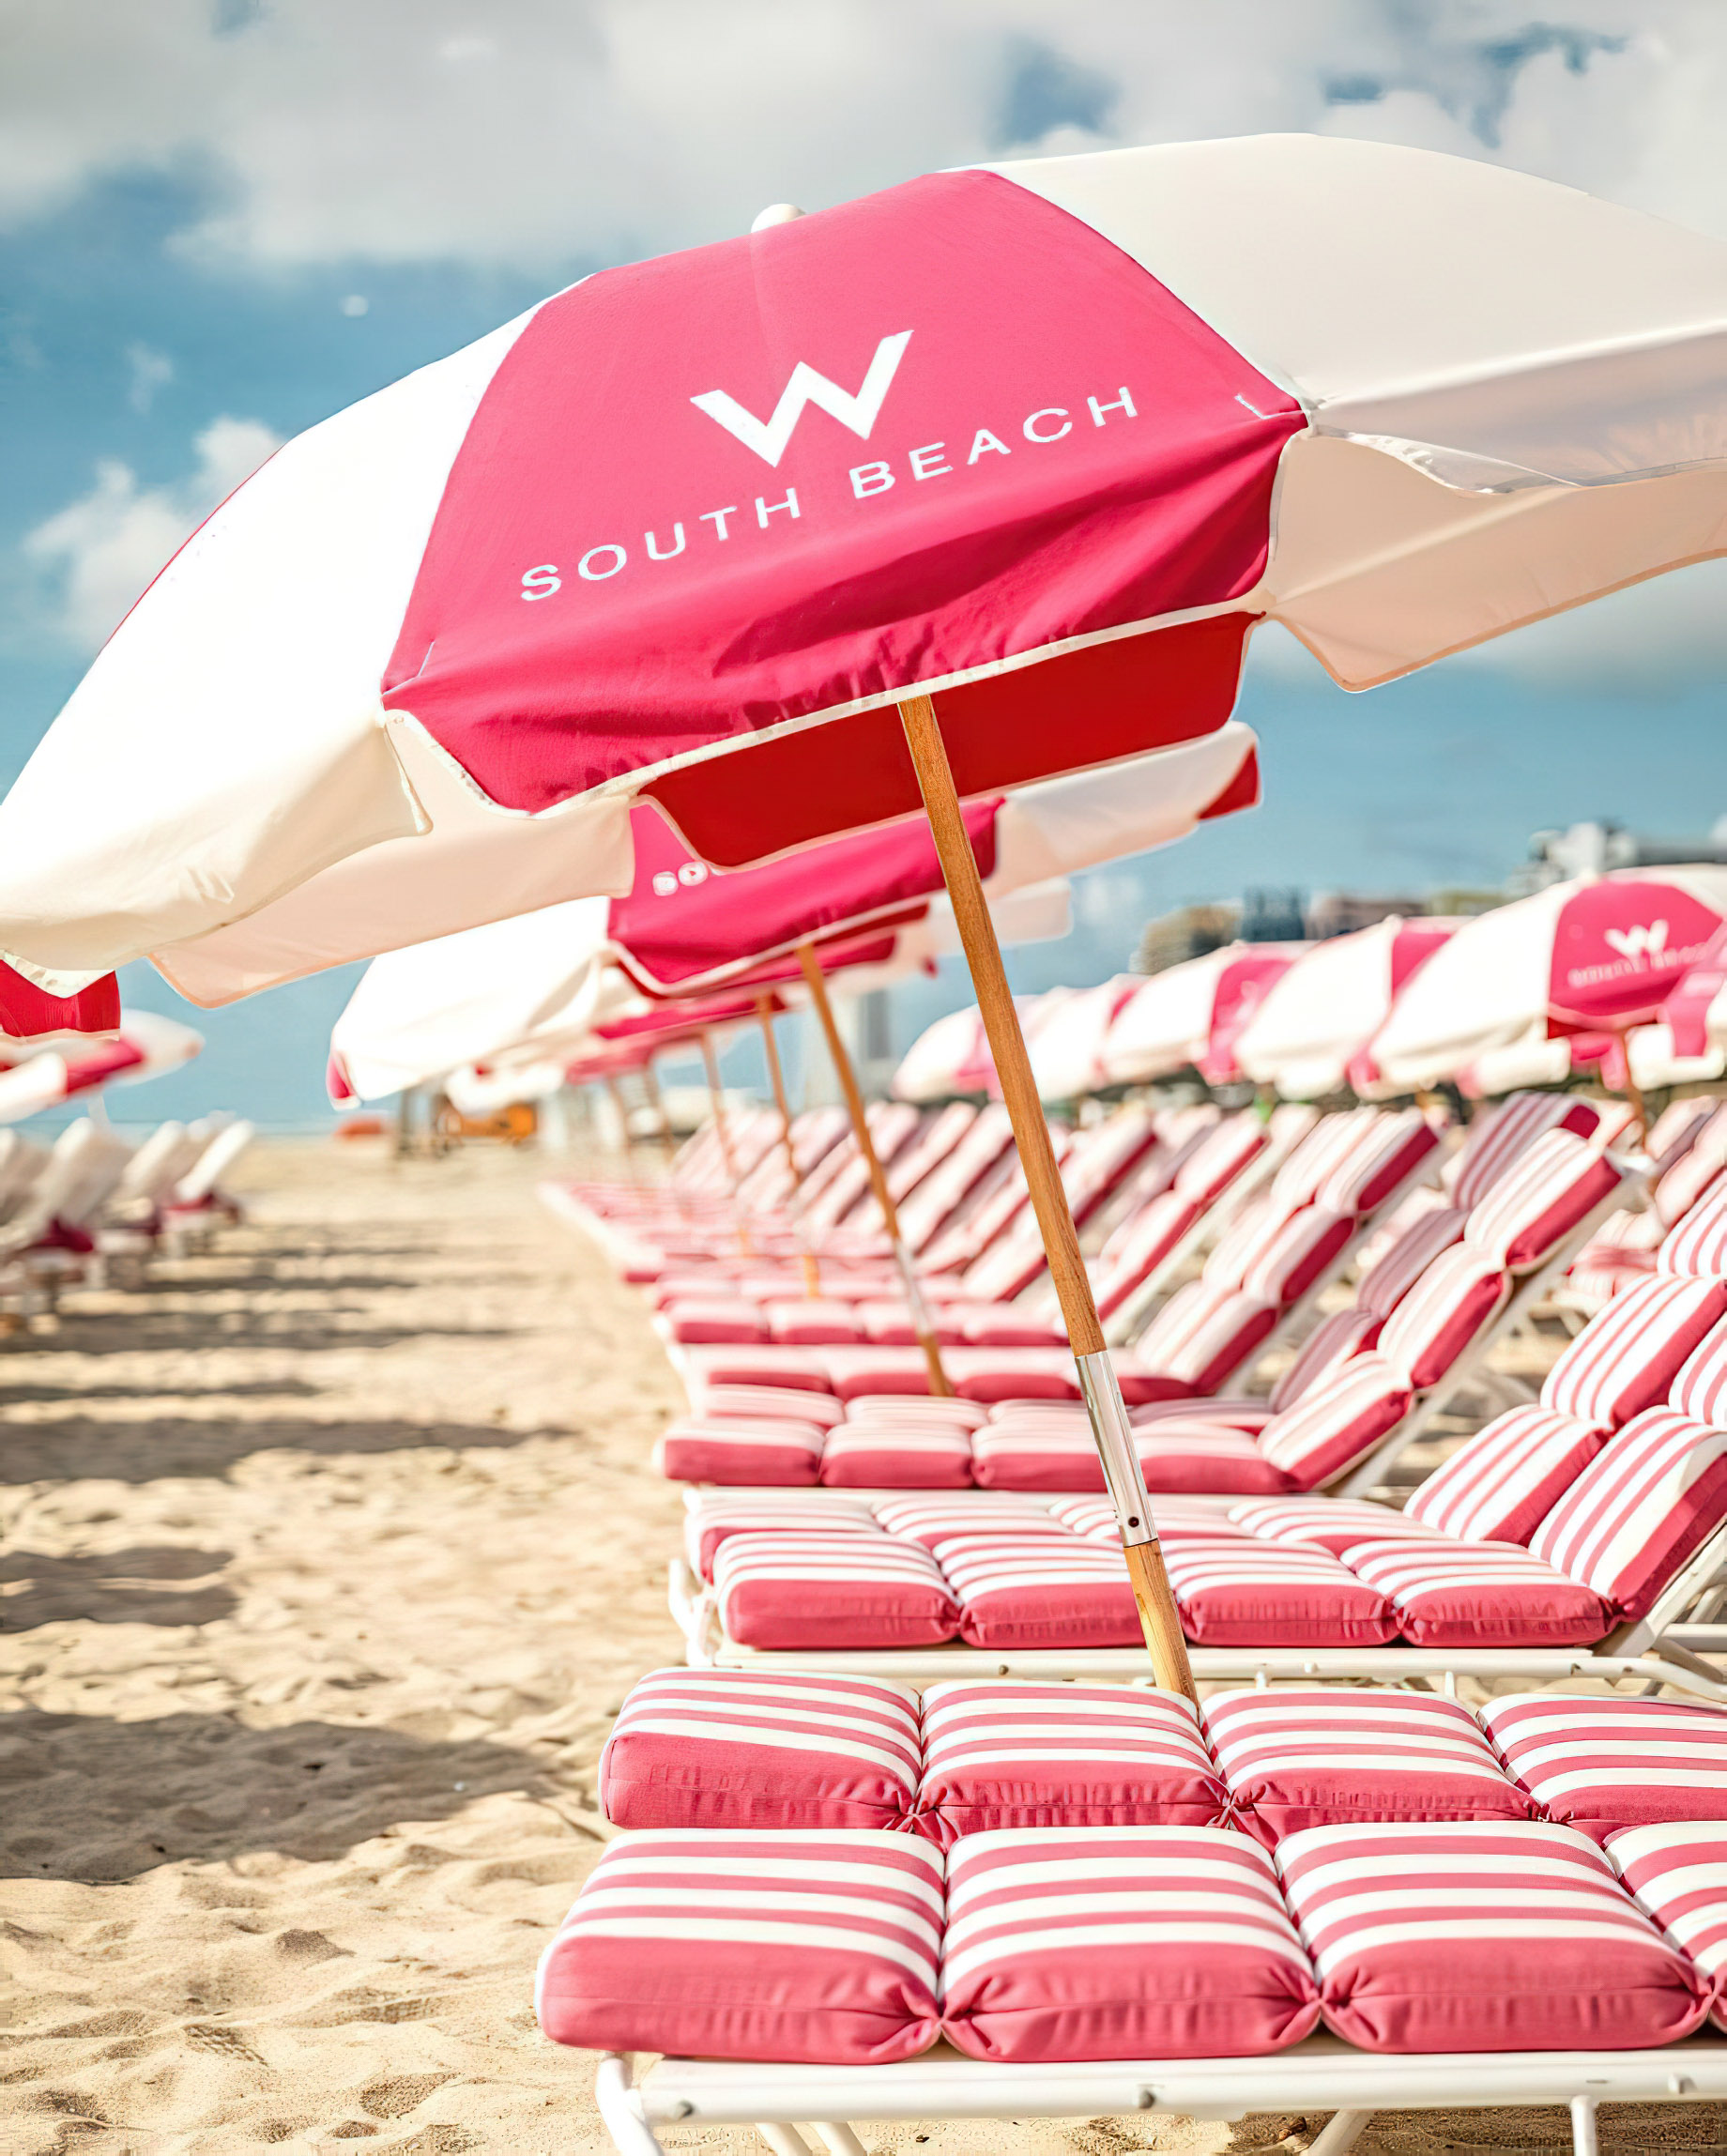 W South Beach Hotel – Miami Beach, FL, USA – W South Beach Chairs and Umbrellas